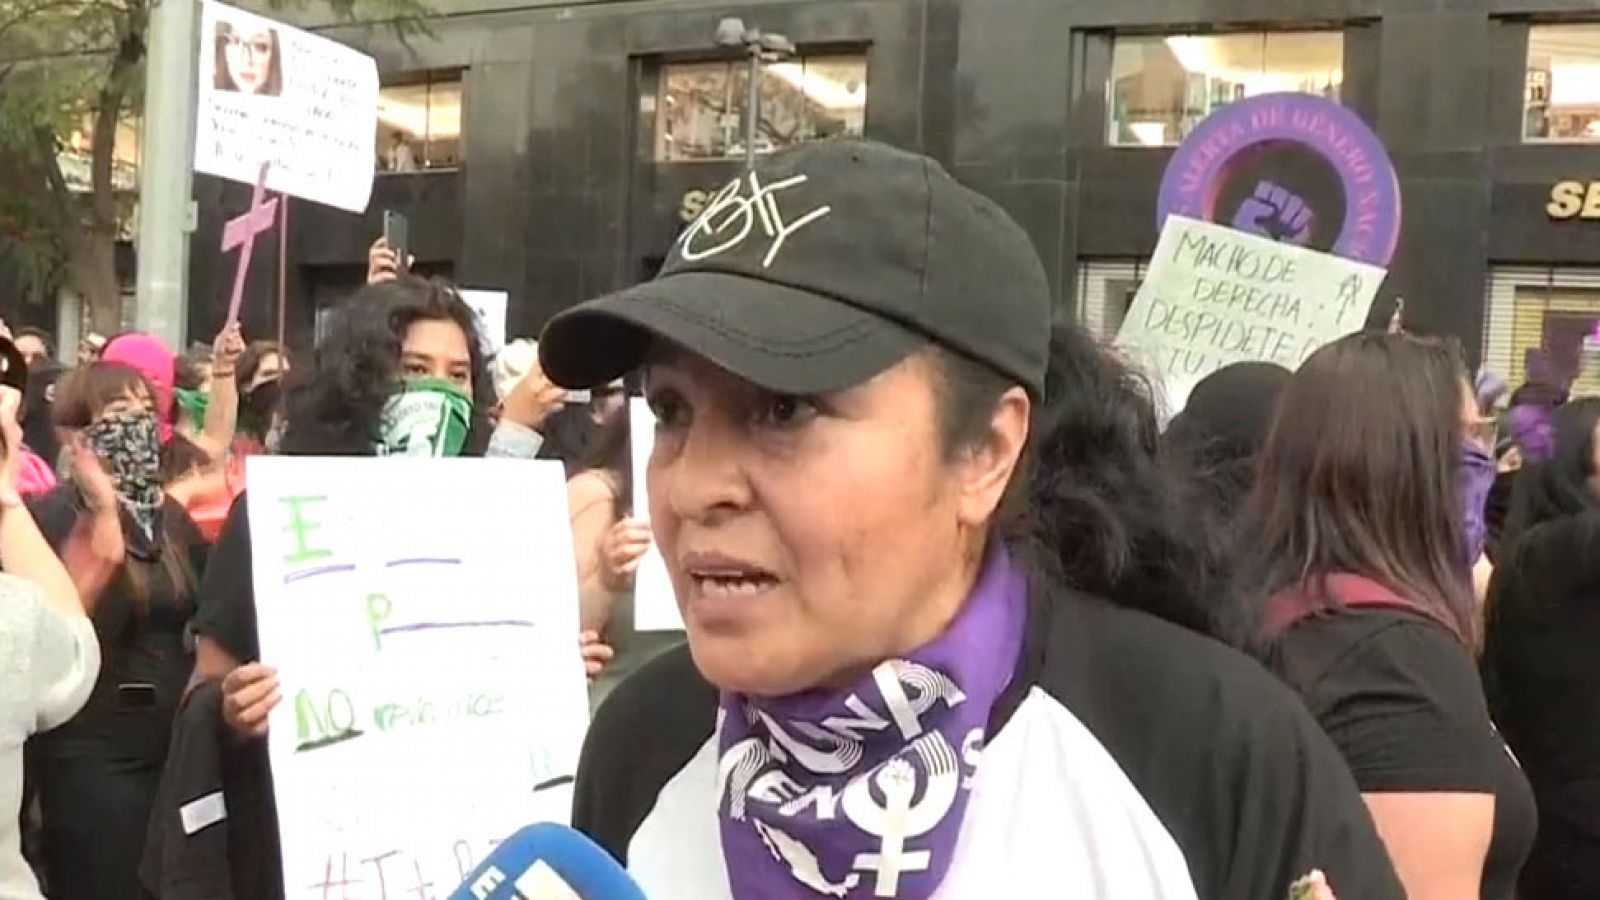 La desesperación de una madre mexicana a la que asesinaron a su hija: "voy a quemarlo todo" - RTVE.es